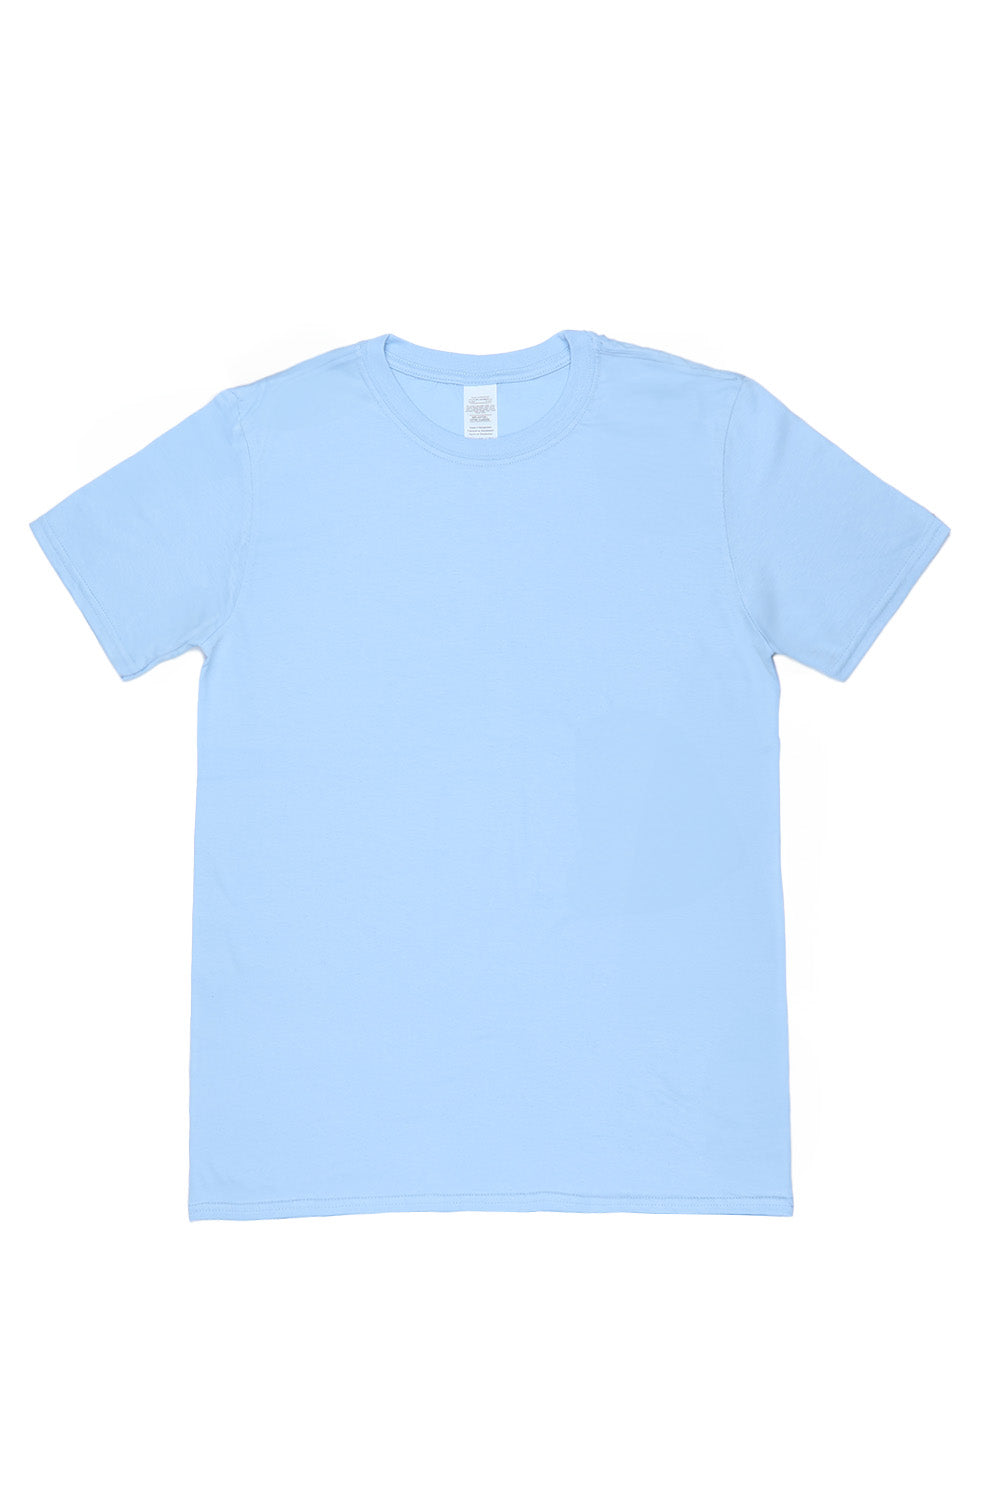 Inner Peace T-Shirt in Light Blue (Custom Packs)